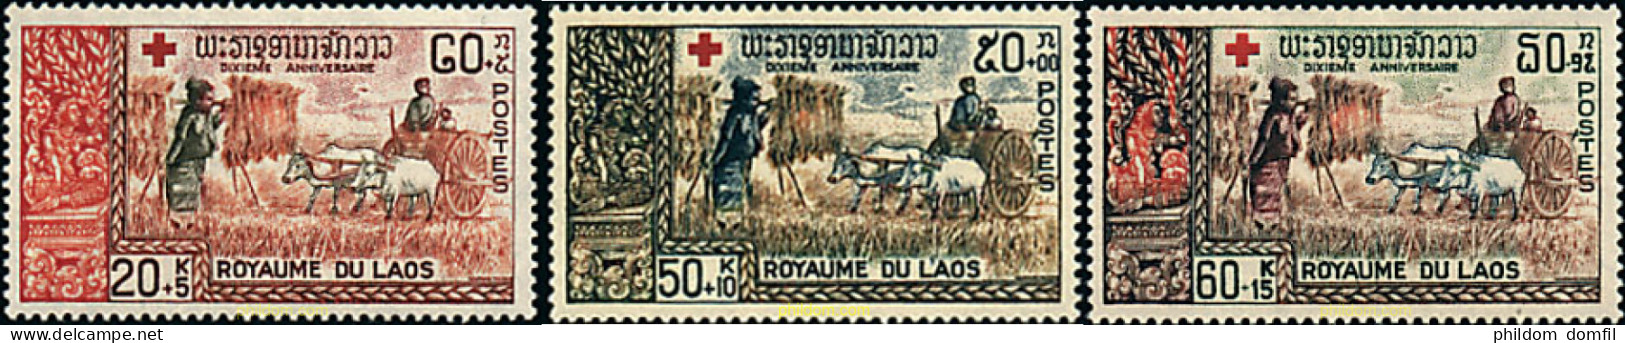 28882 MNH LAOS 1967 10 ANIVERSARIO DE LA CRUZ ROJA NACIONAL - Laos